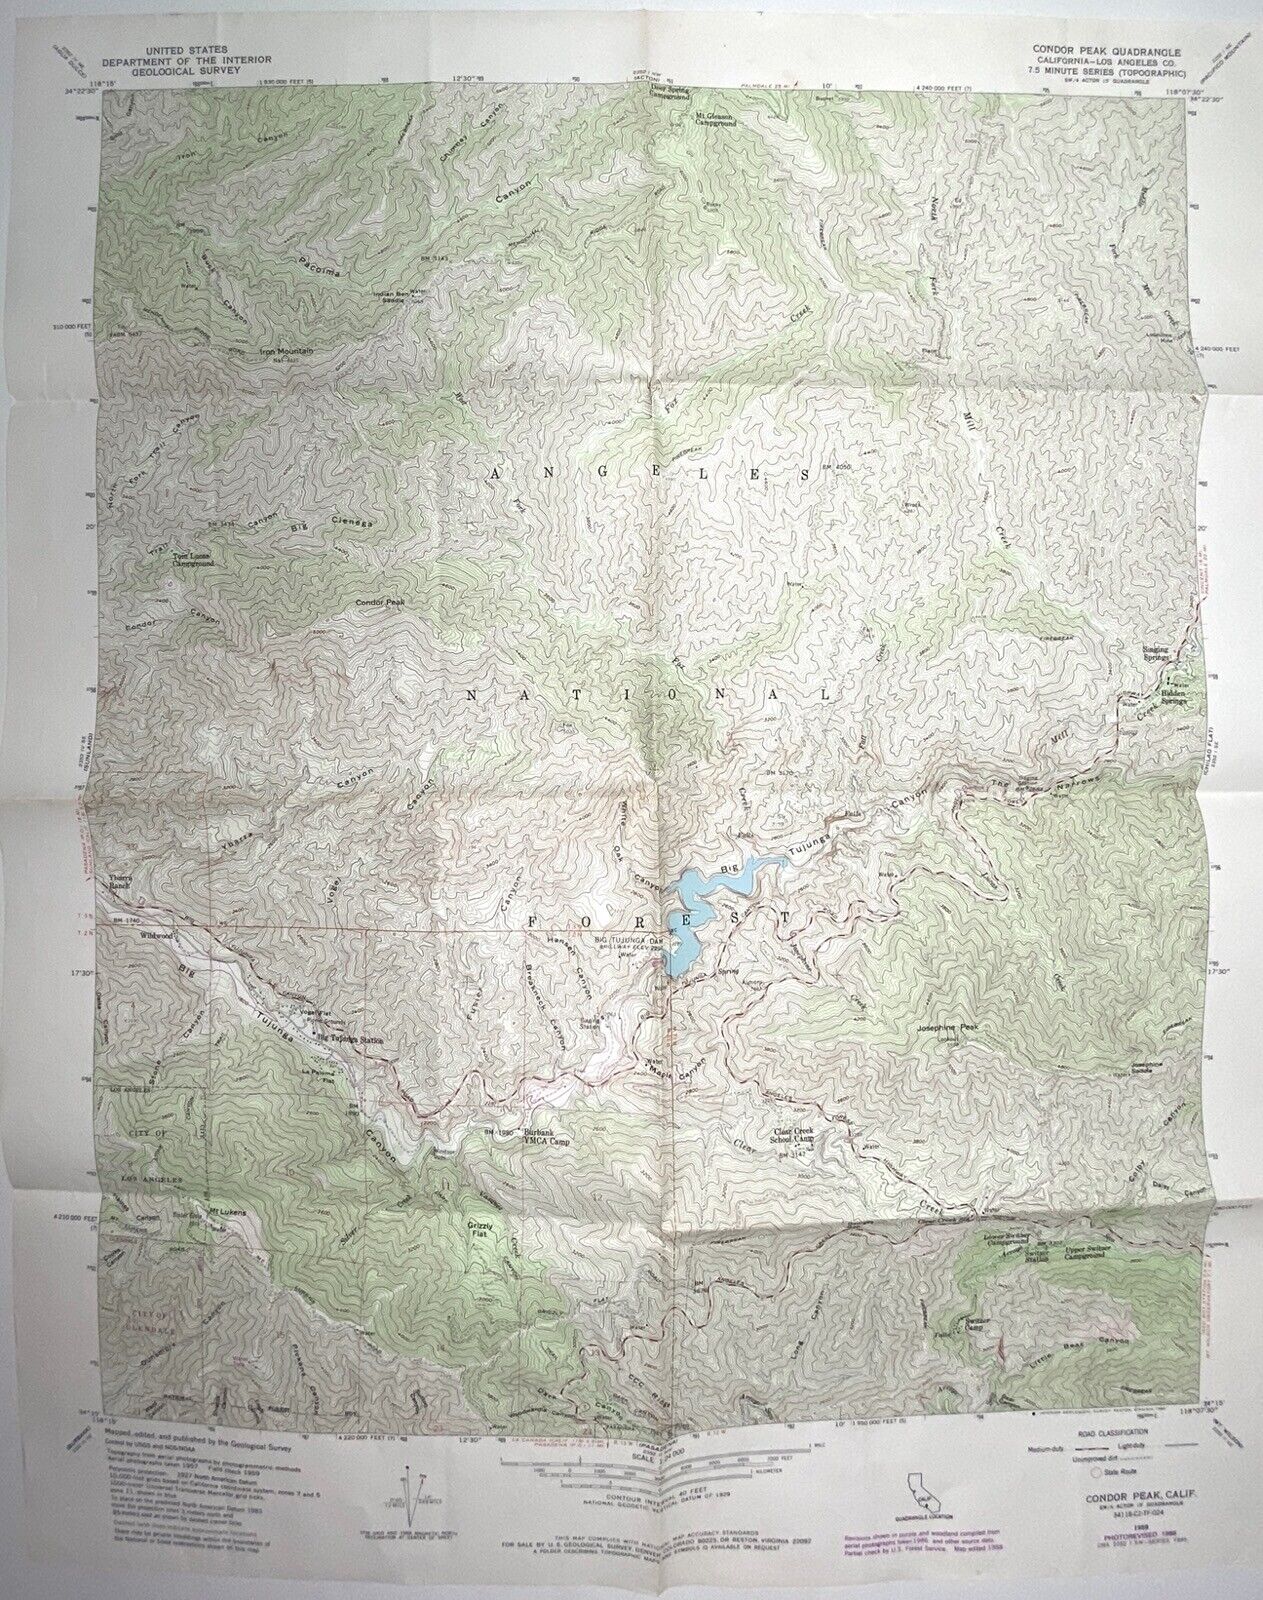 Condor Peak Quad - Los Angeles California • 1959-1988 Geological Topographic Map